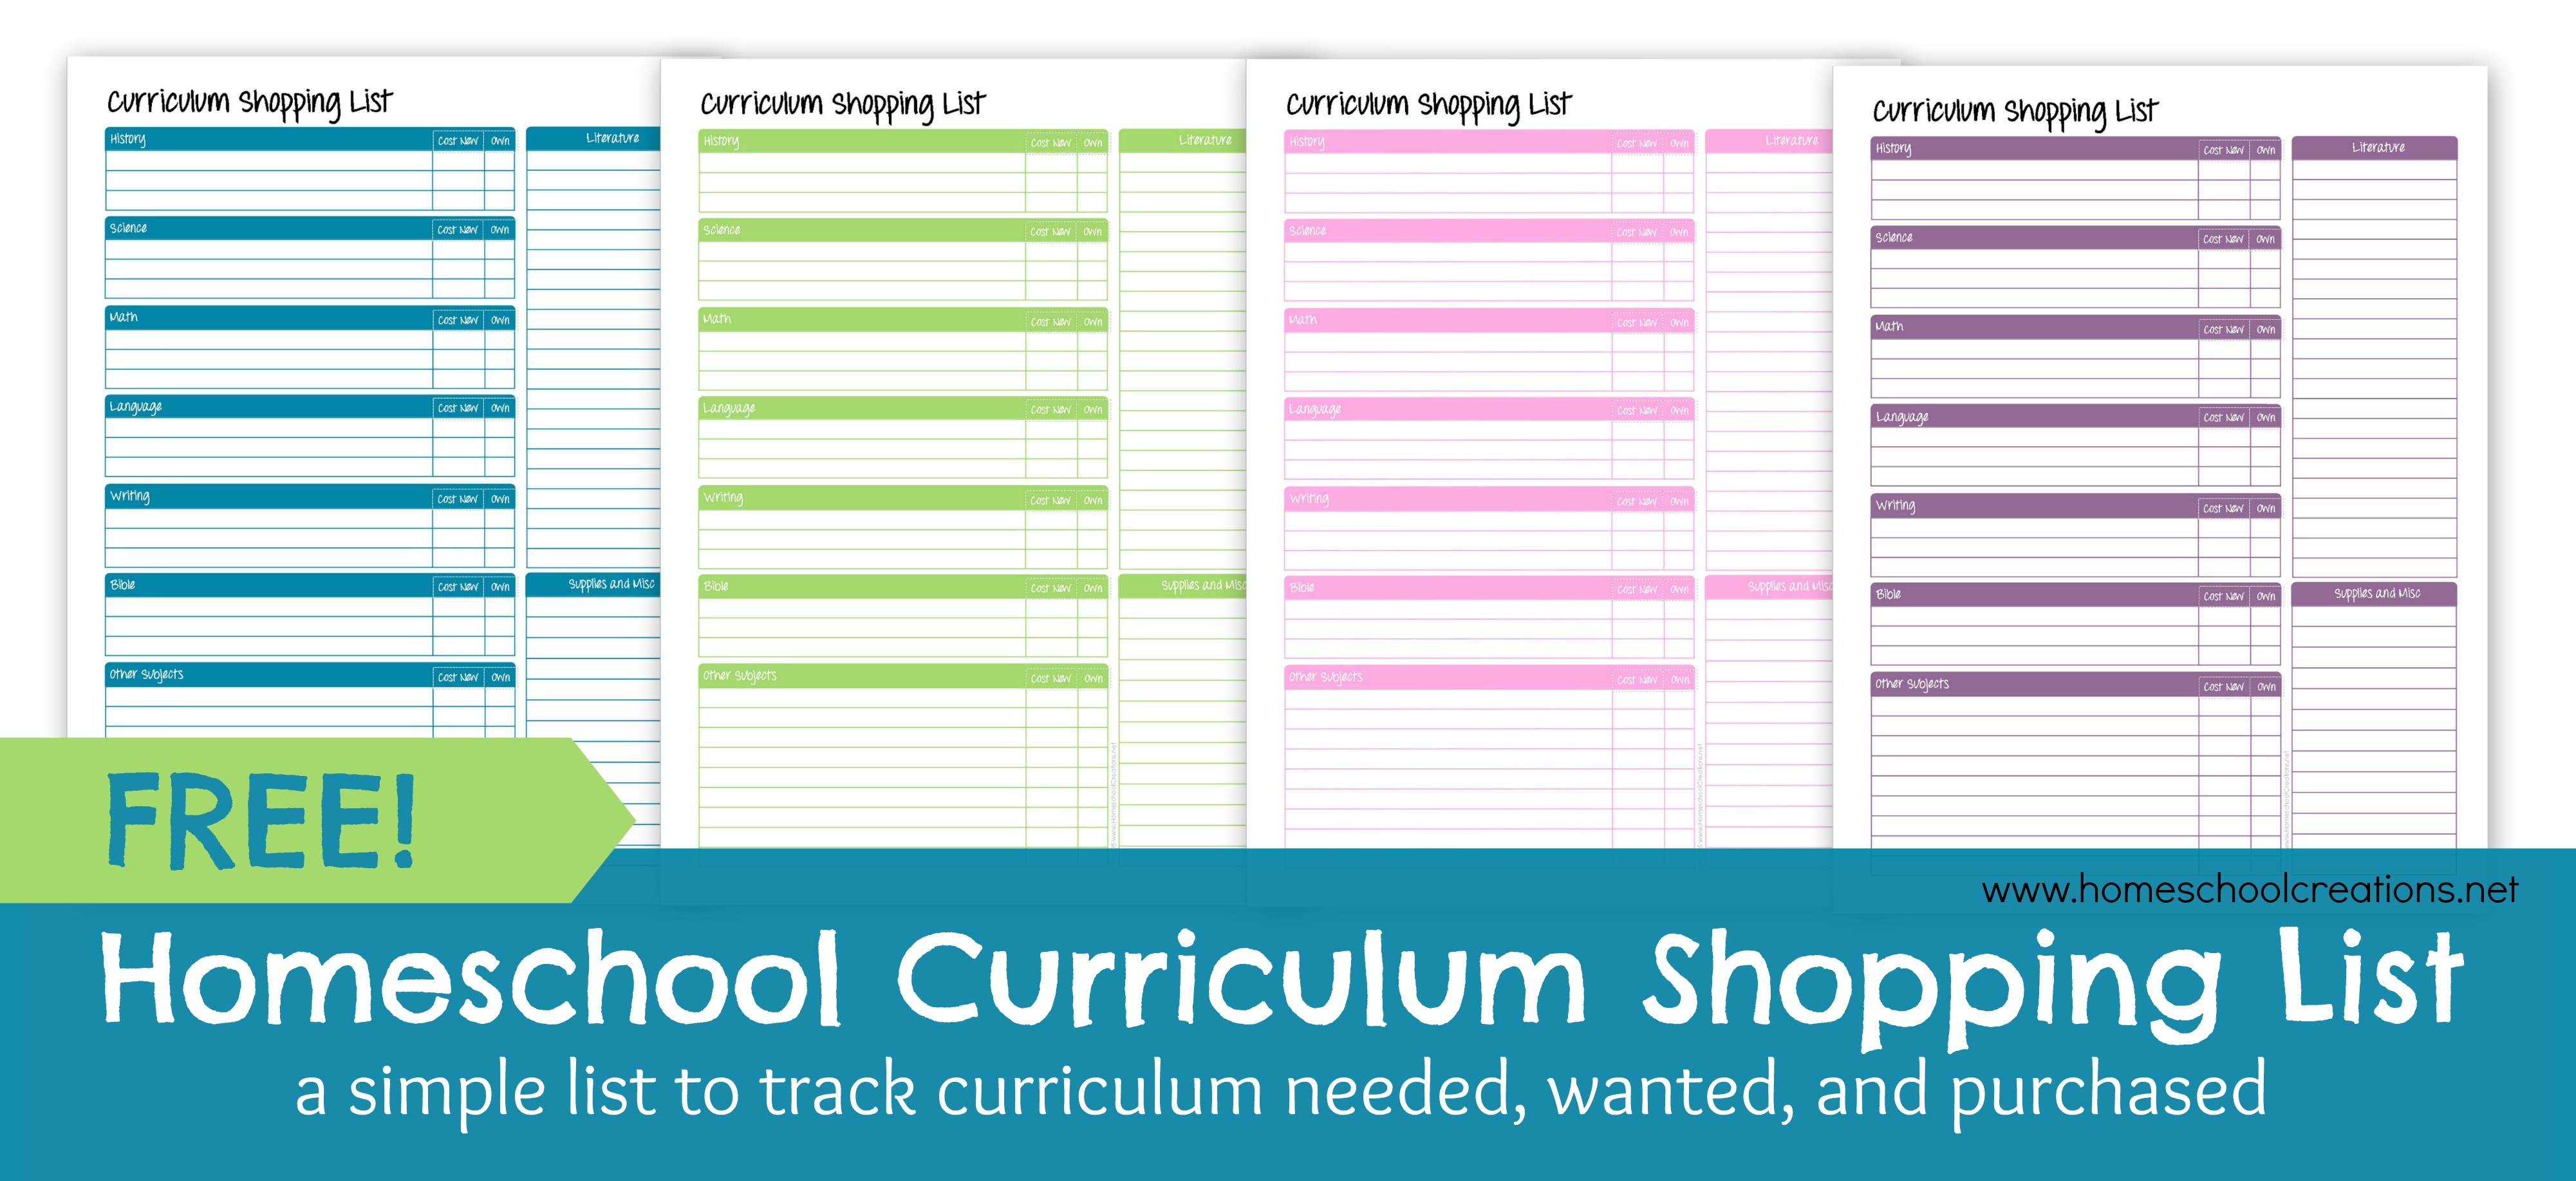 Homeschool Curriculum Shopping List: Free Printable - Free Printable Homeschool Curriculum